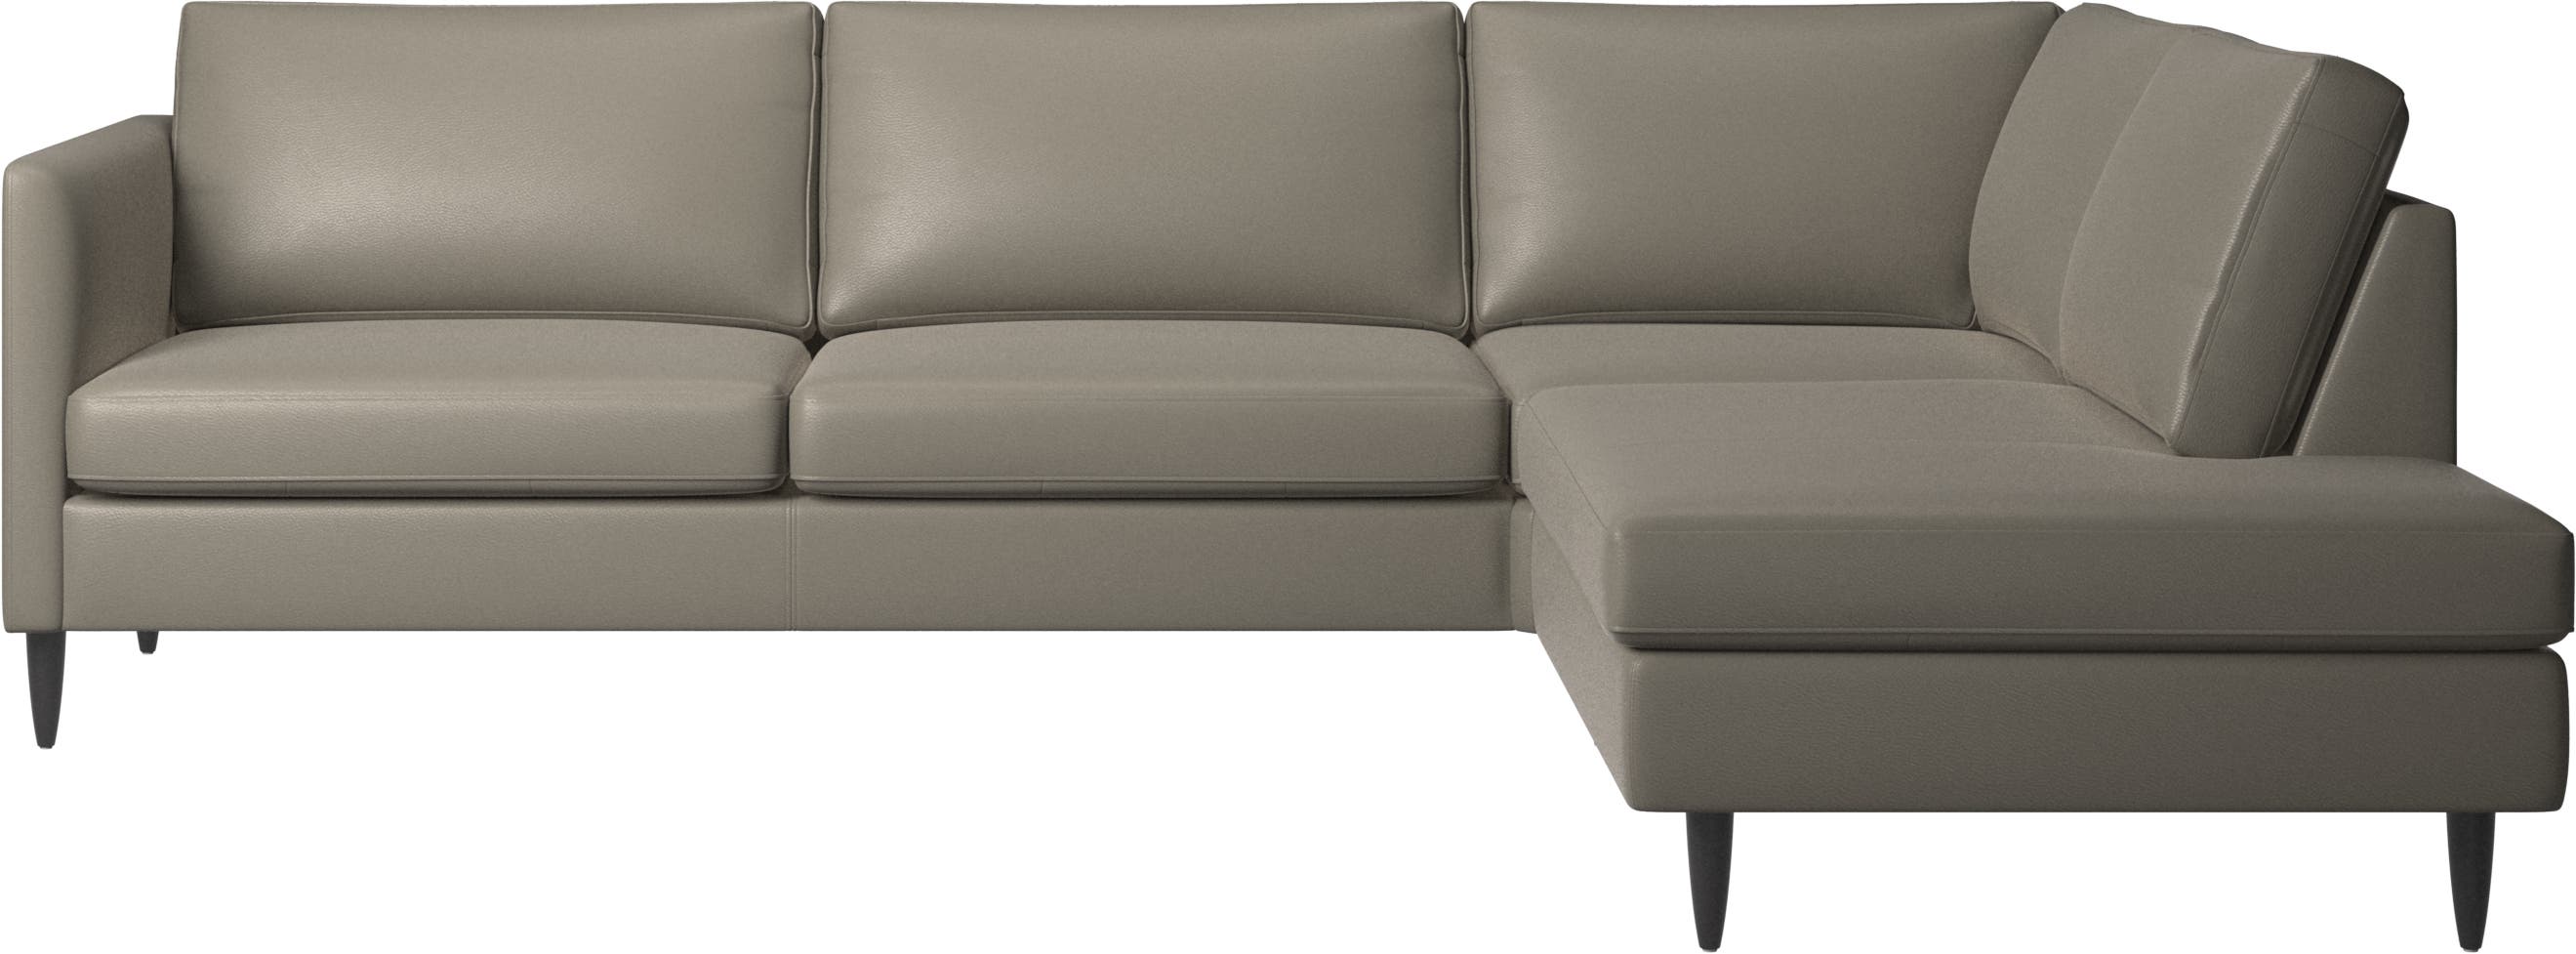 Indivi corner sofa with lounging unit